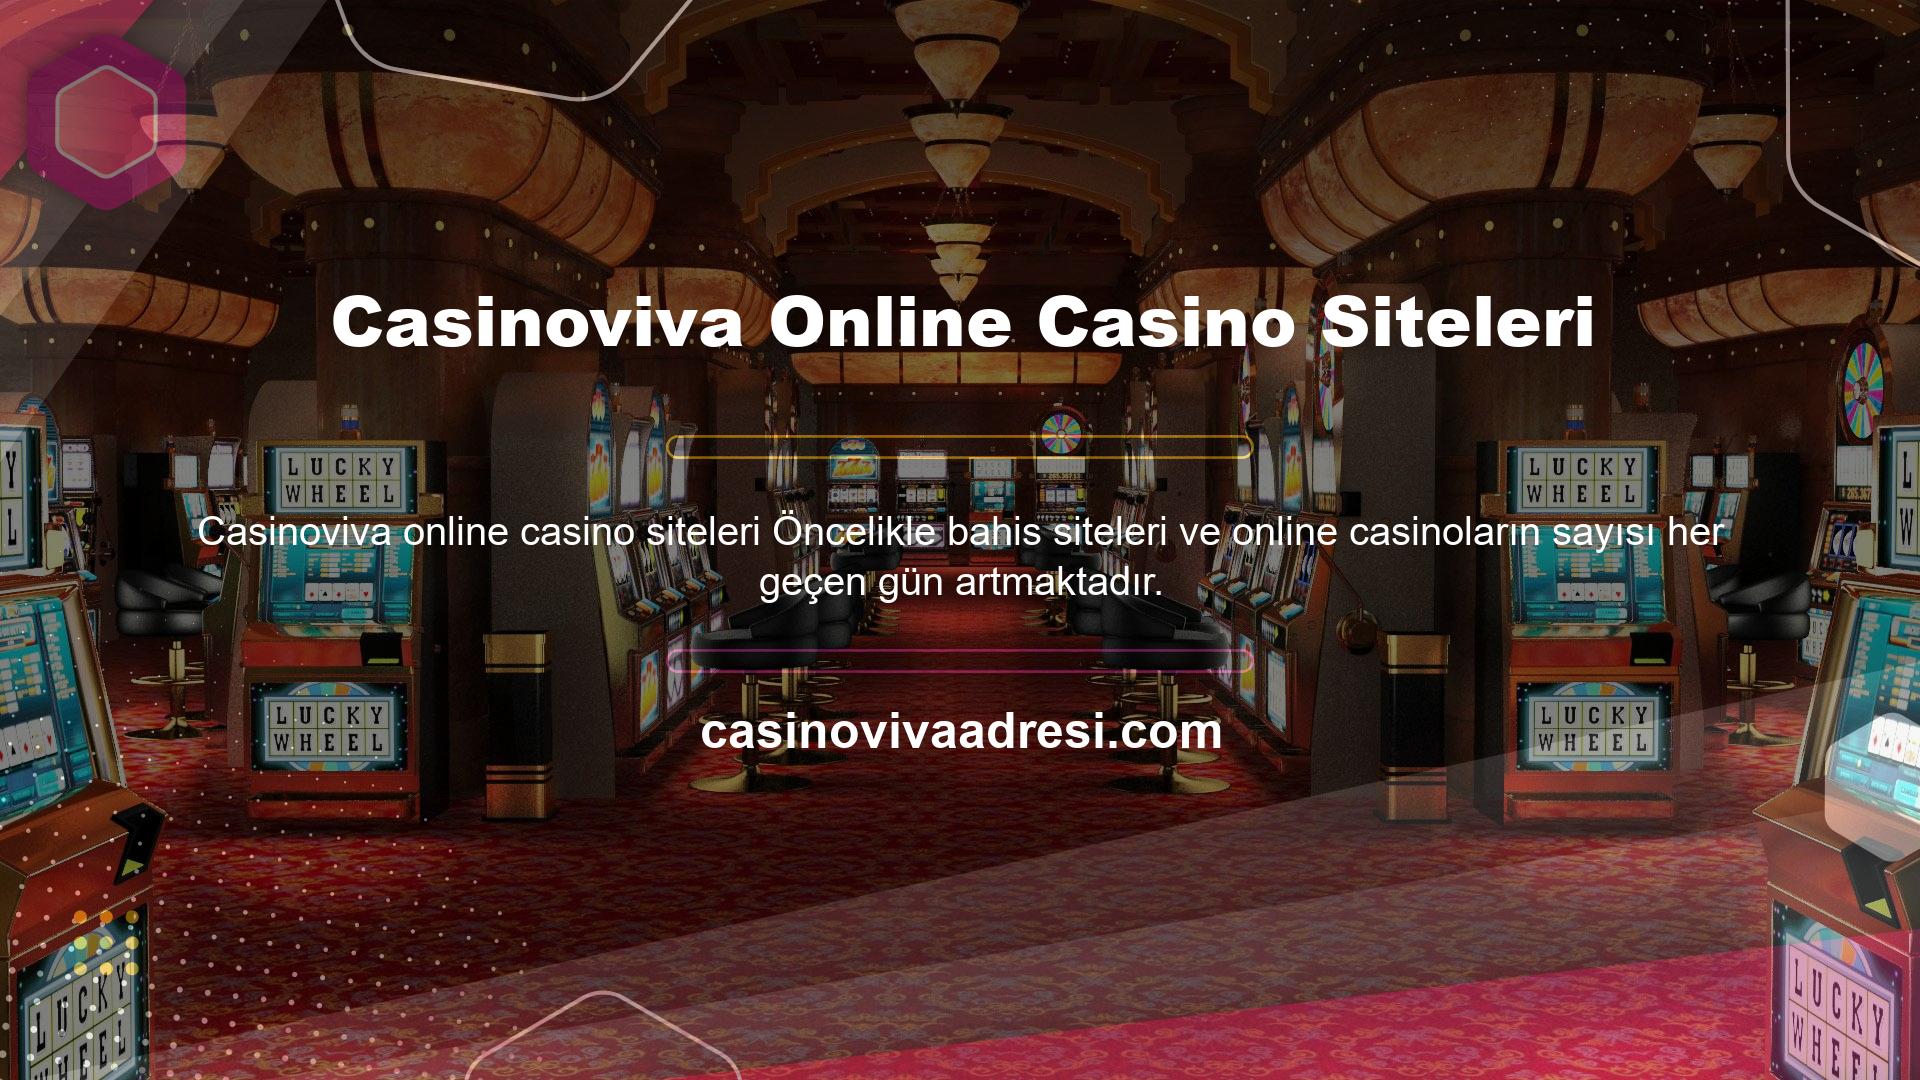 Casinoviva Online Casino Siteleri